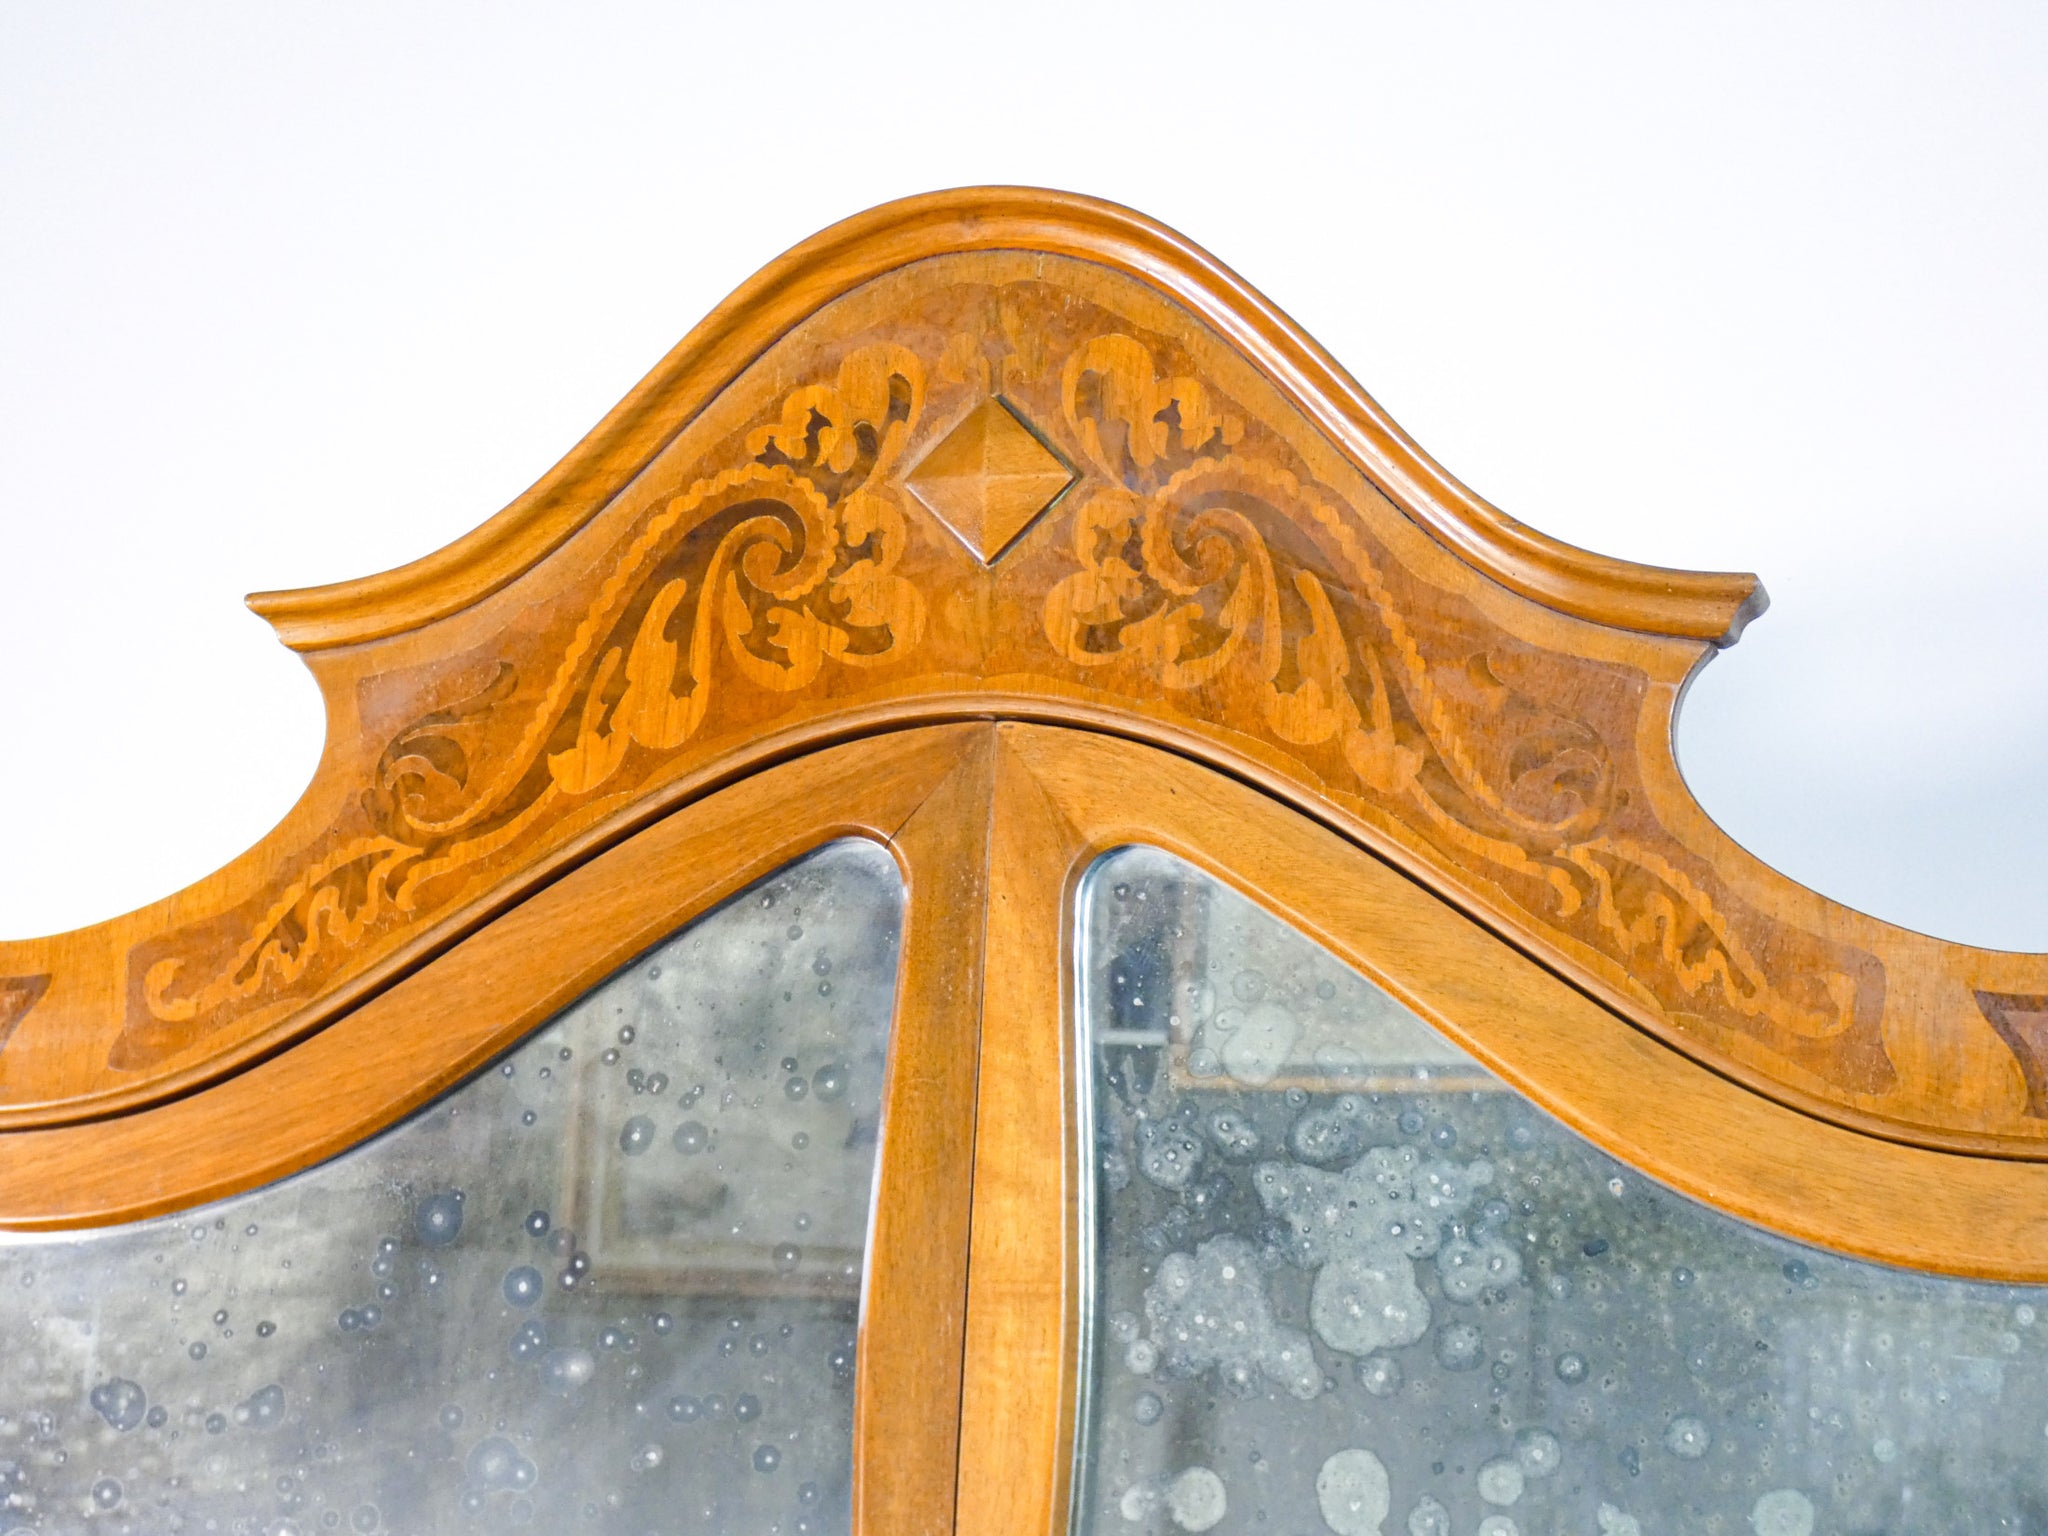 troumeau legno noce intarsiato alzata specchio credenza stipo epoca 1900